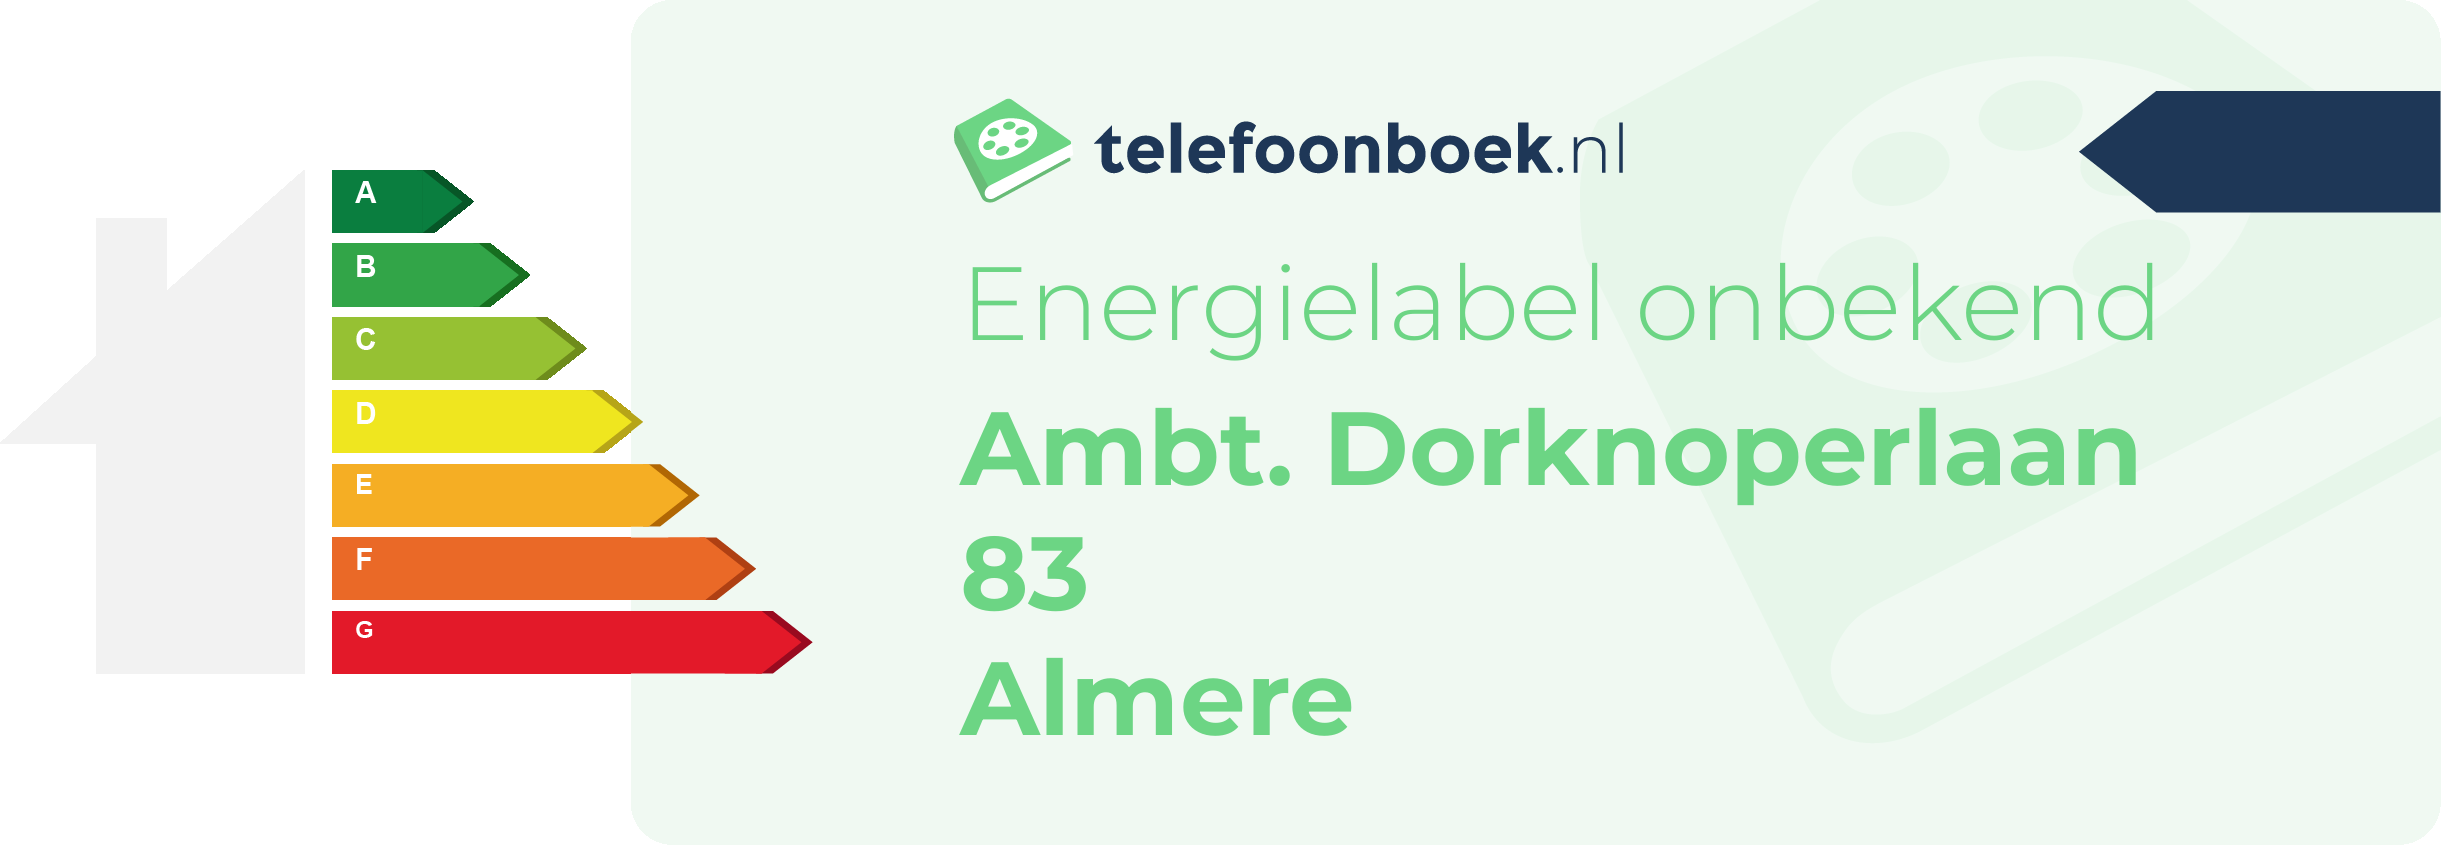 Energielabel Ambt. Dorknoperlaan 83 Almere